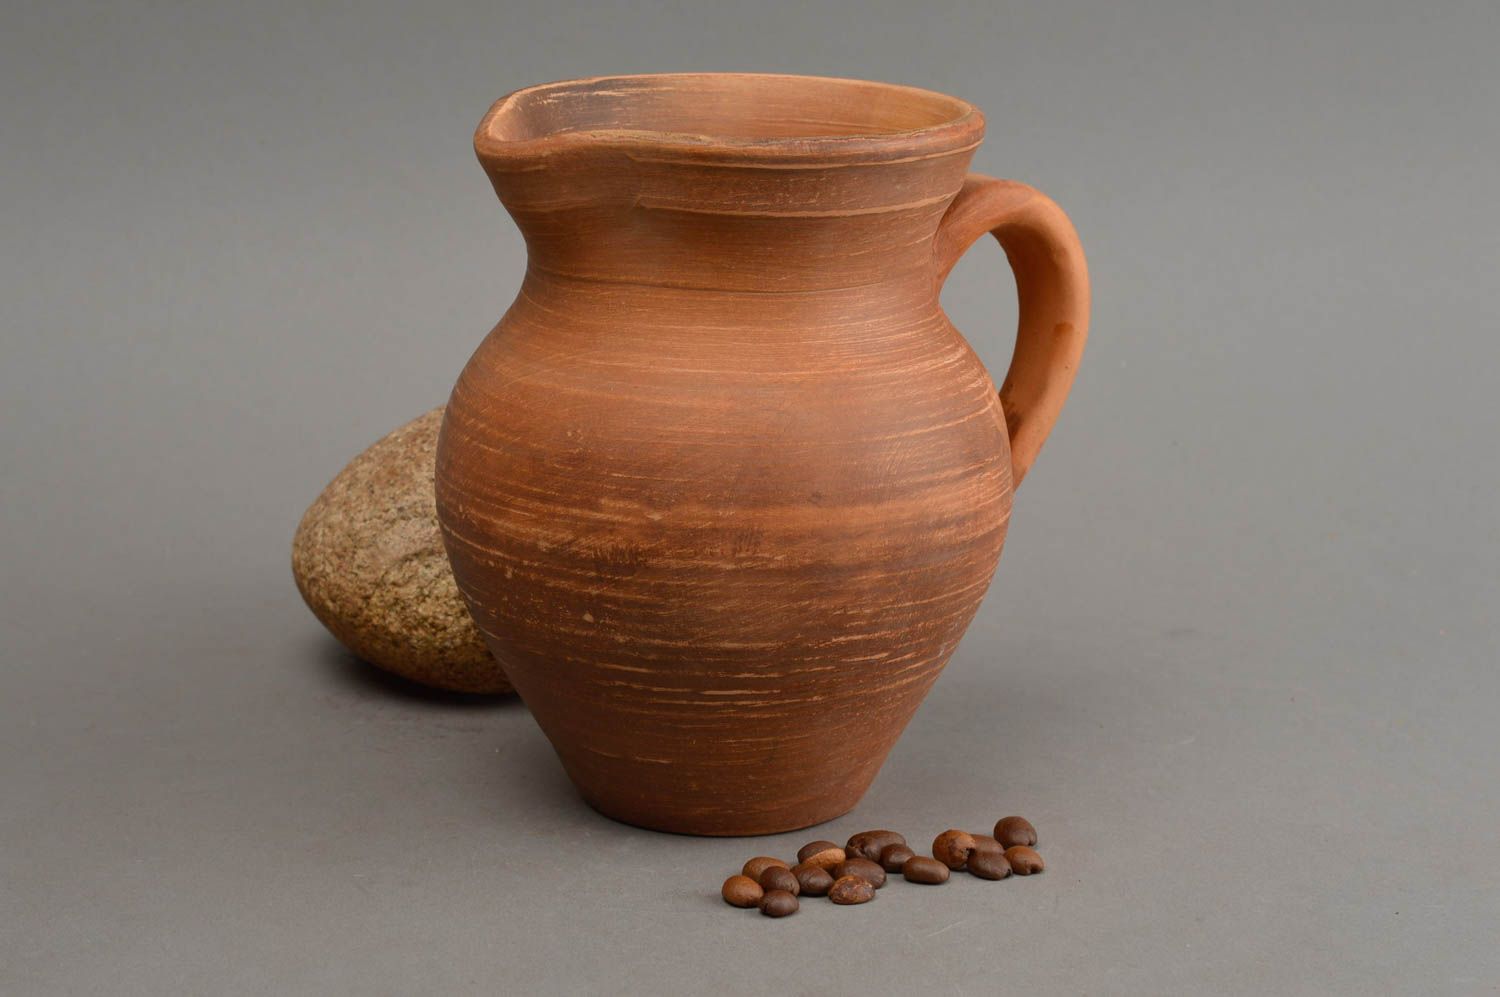 15 oz ceramic clay milk jug with handle with no lid 1 lb photo 1